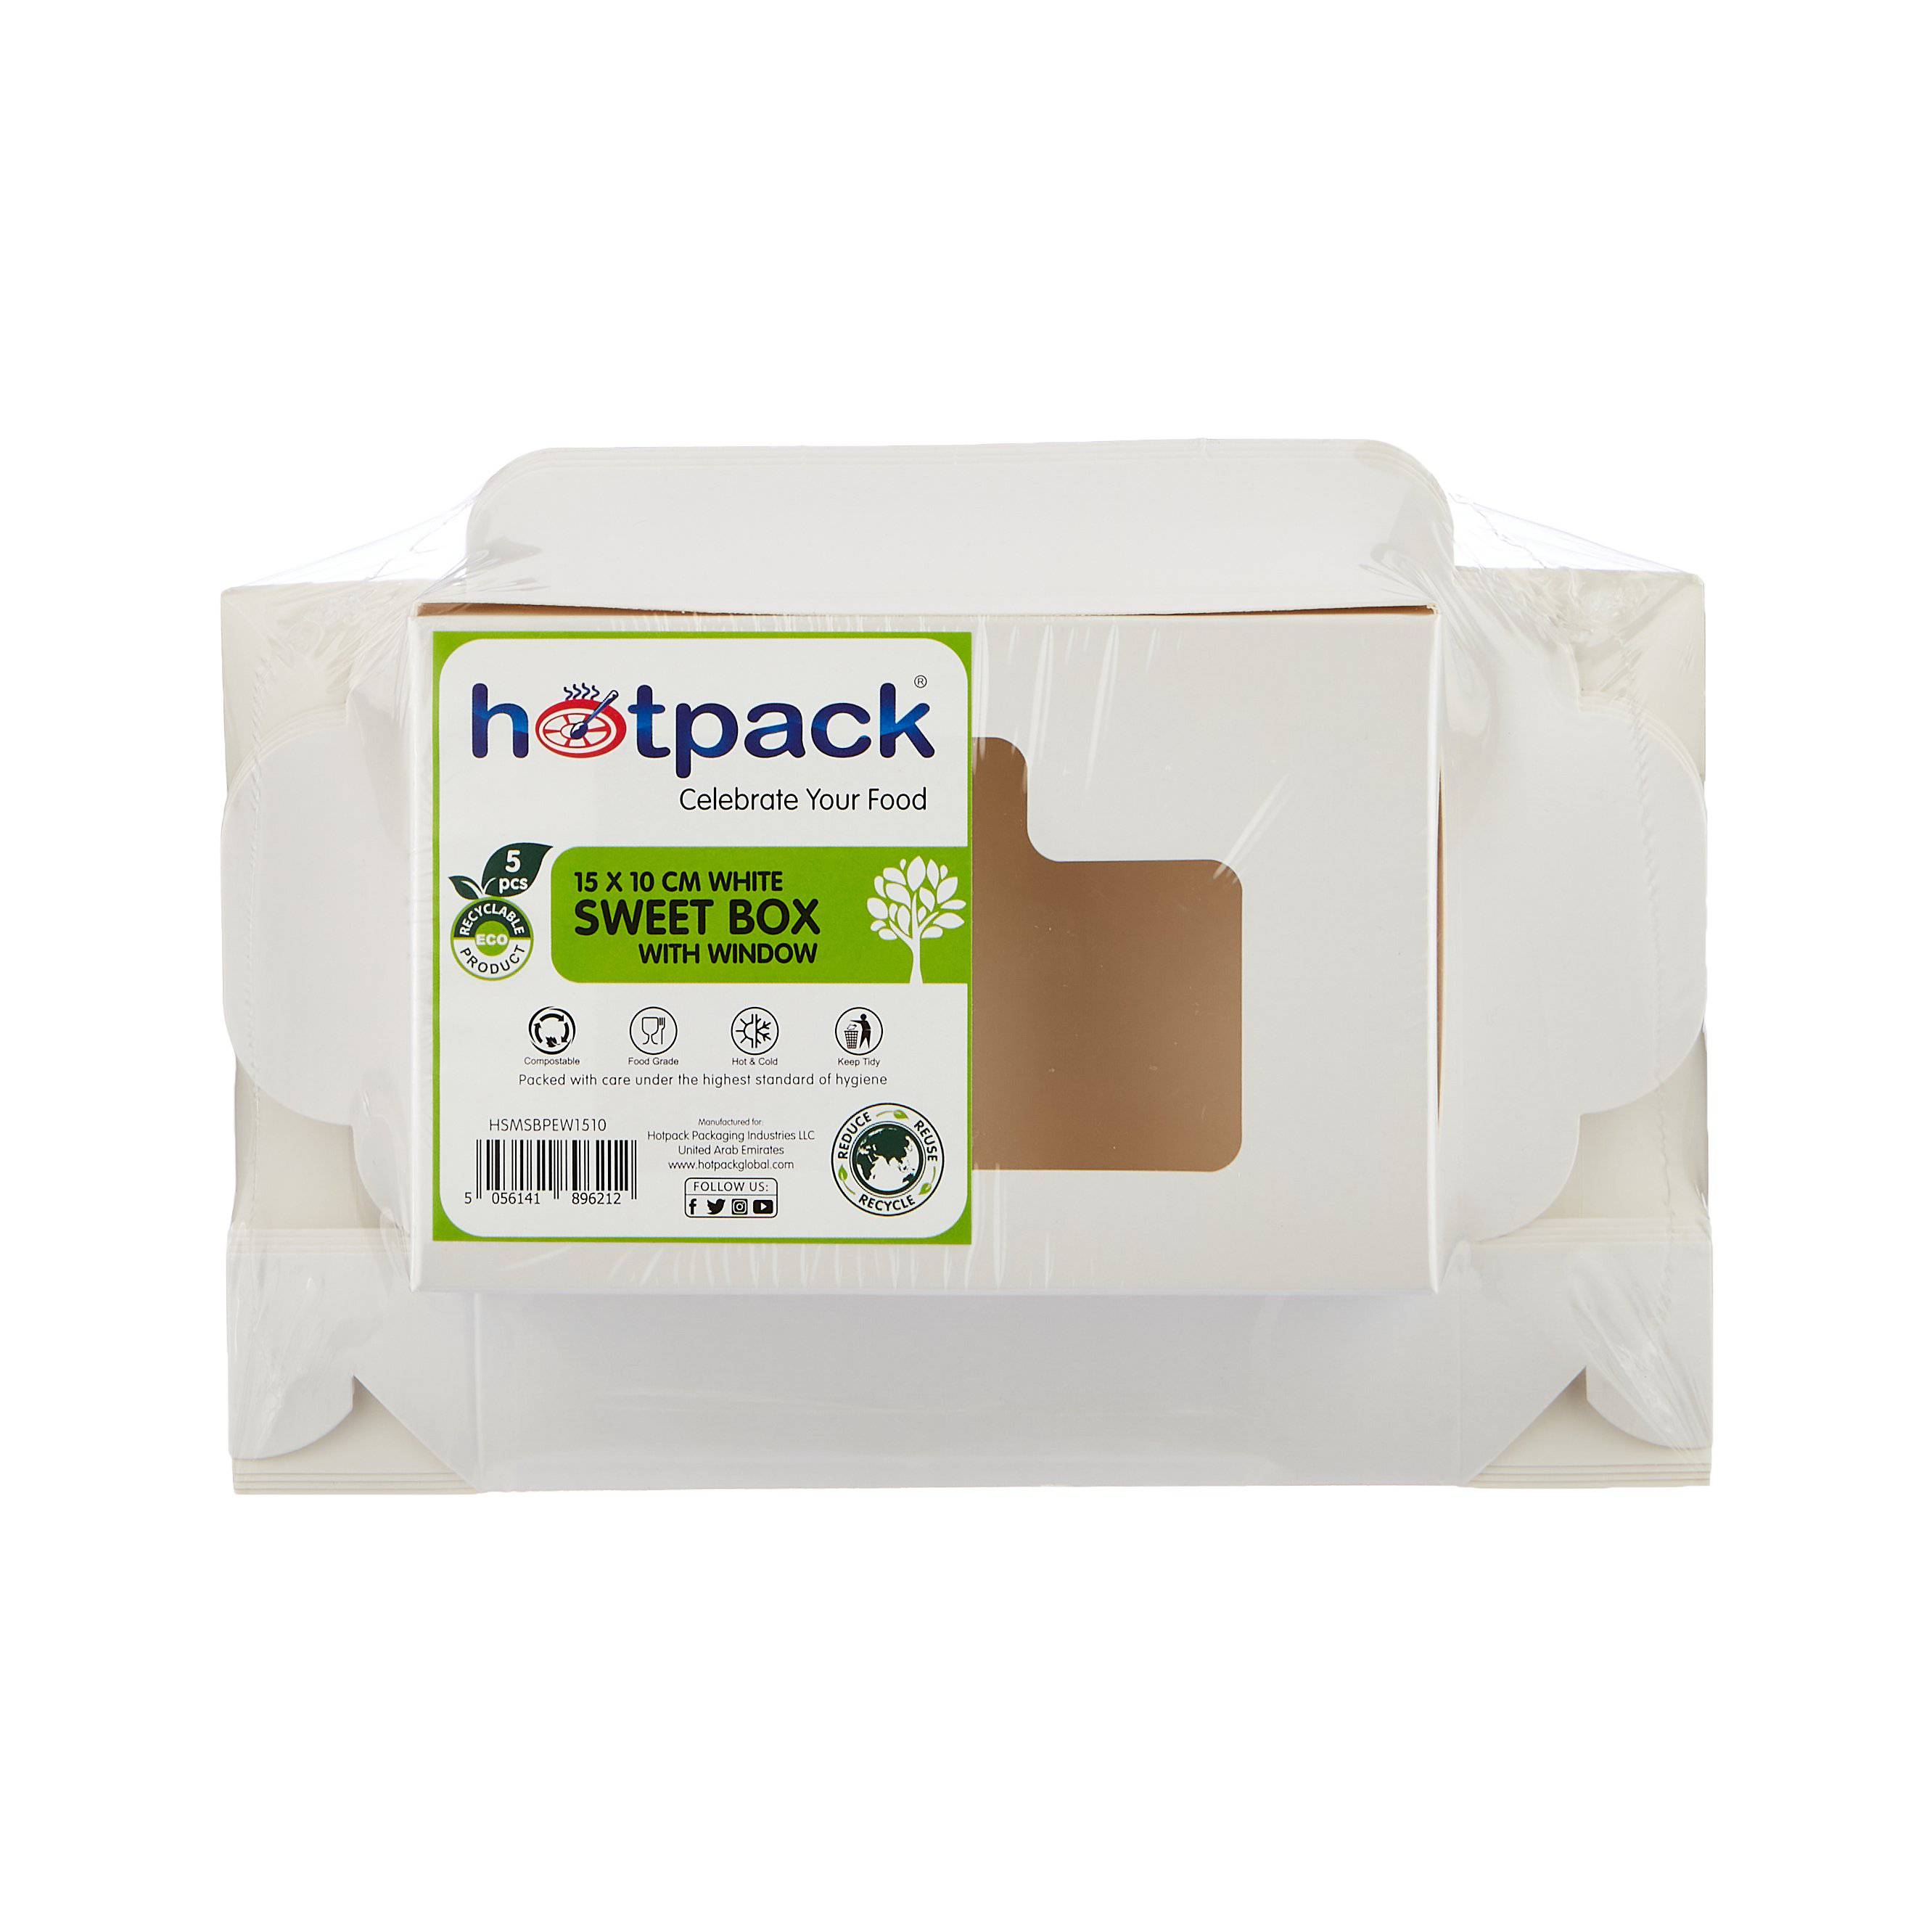 Hotpack Sweet Box White 15x10 Cm